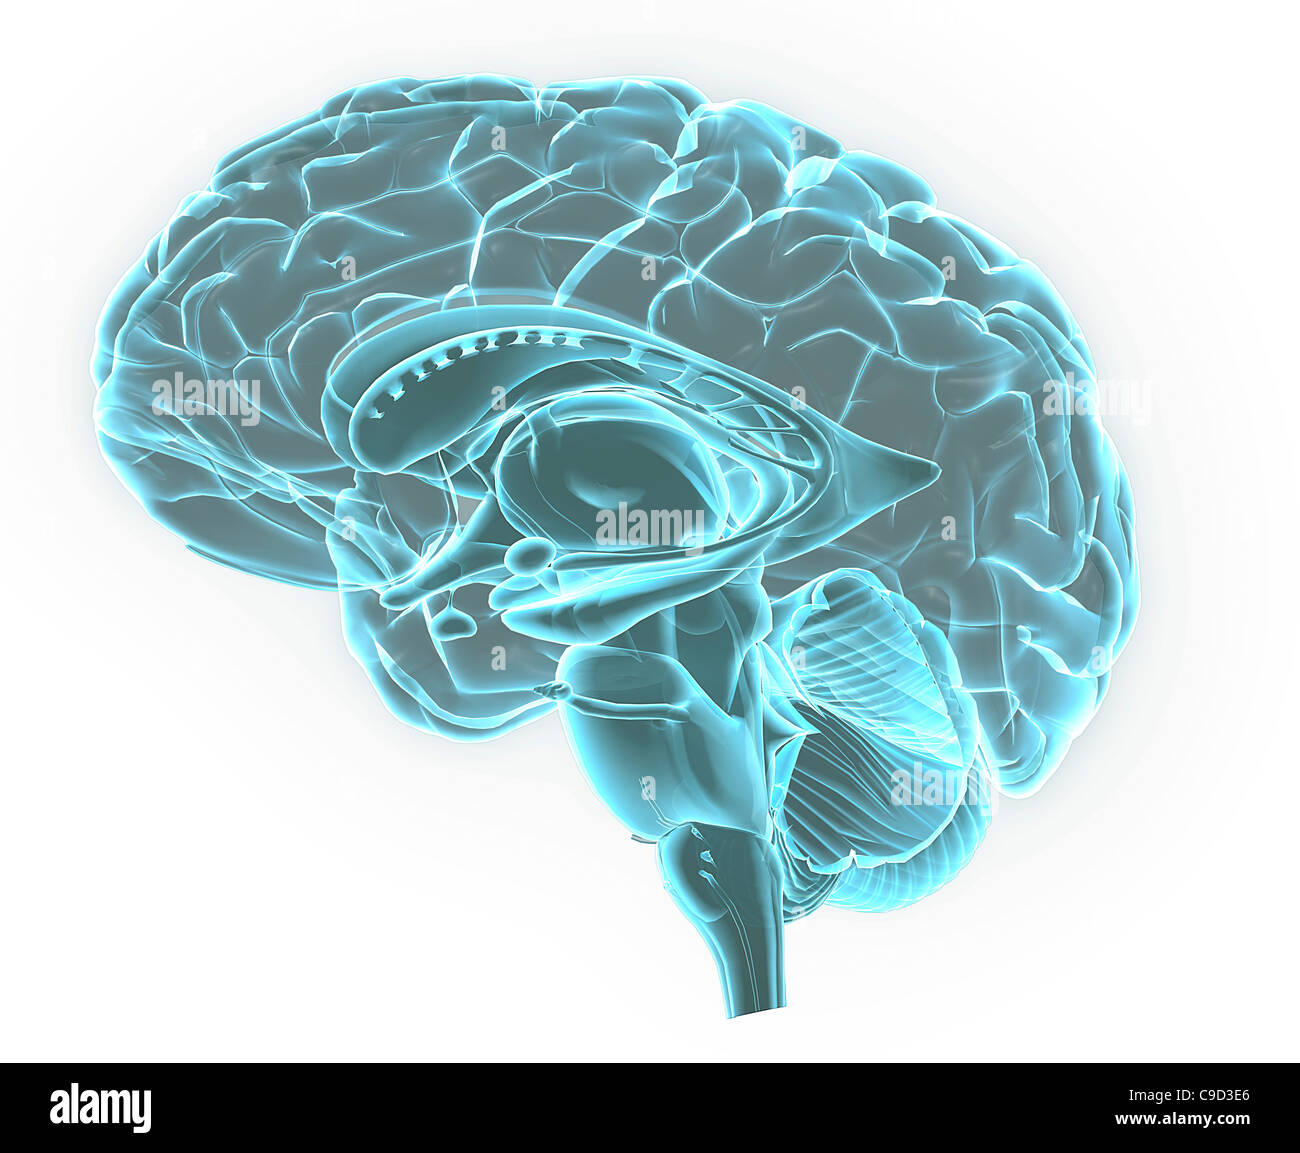 Blue X-ray image des droits de l'anatomie du cerveau, 3-D section sagittale (vue latérale, section transversale) de cerveau humain et de ses parties Banque D'Images